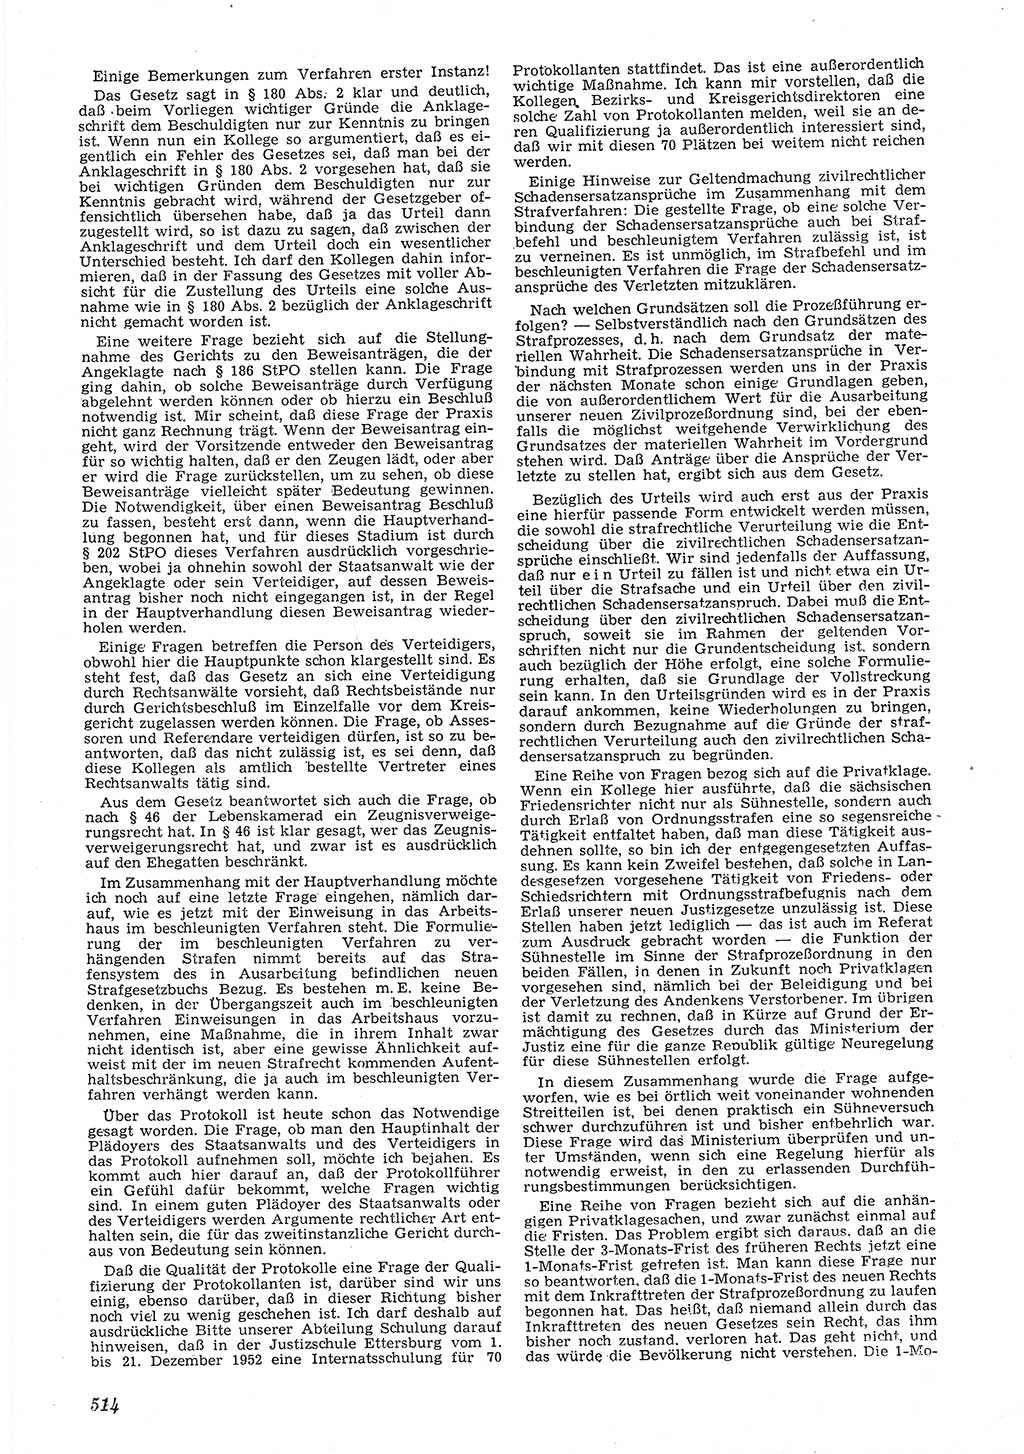 Neue Justiz (NJ), Zeitschrift für Recht und Rechtswissenschaft [Deutsche Demokratische Republik (DDR)], 6. Jahrgang 1952, Seite 514 (NJ DDR 1952, S. 514)